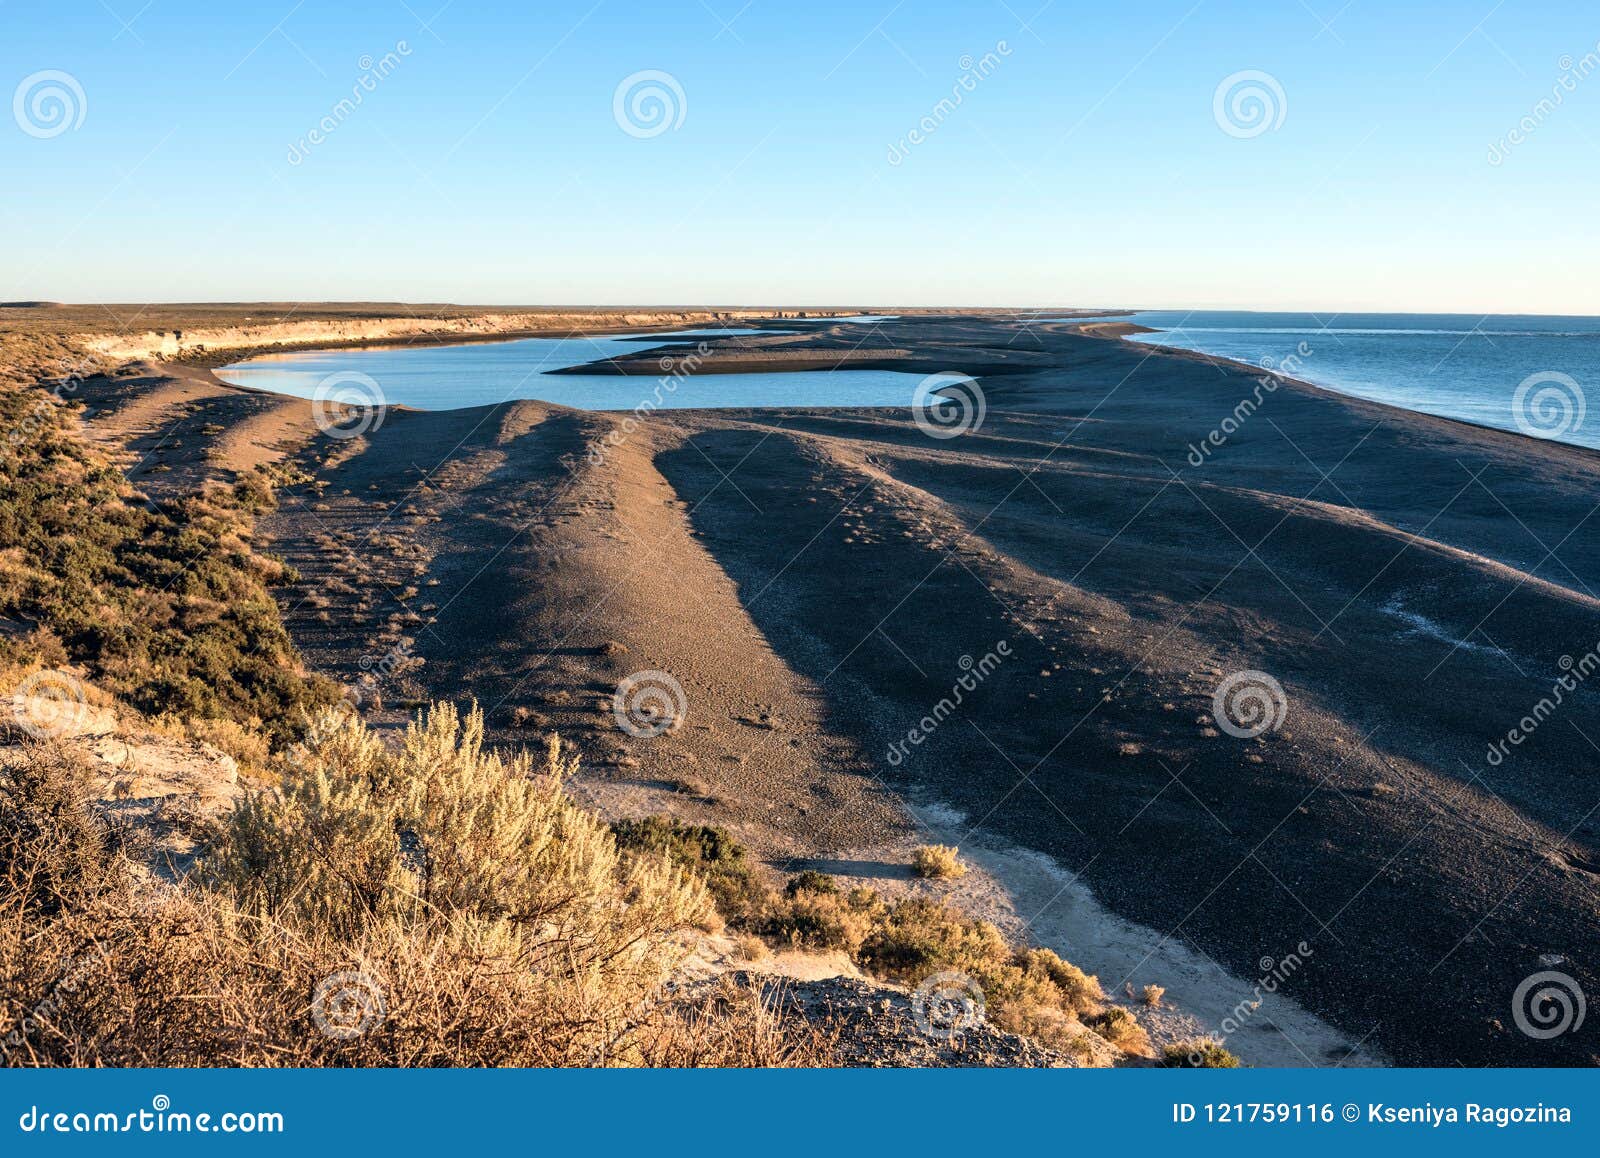 patagonia coastline, peninsula valdes, argentina